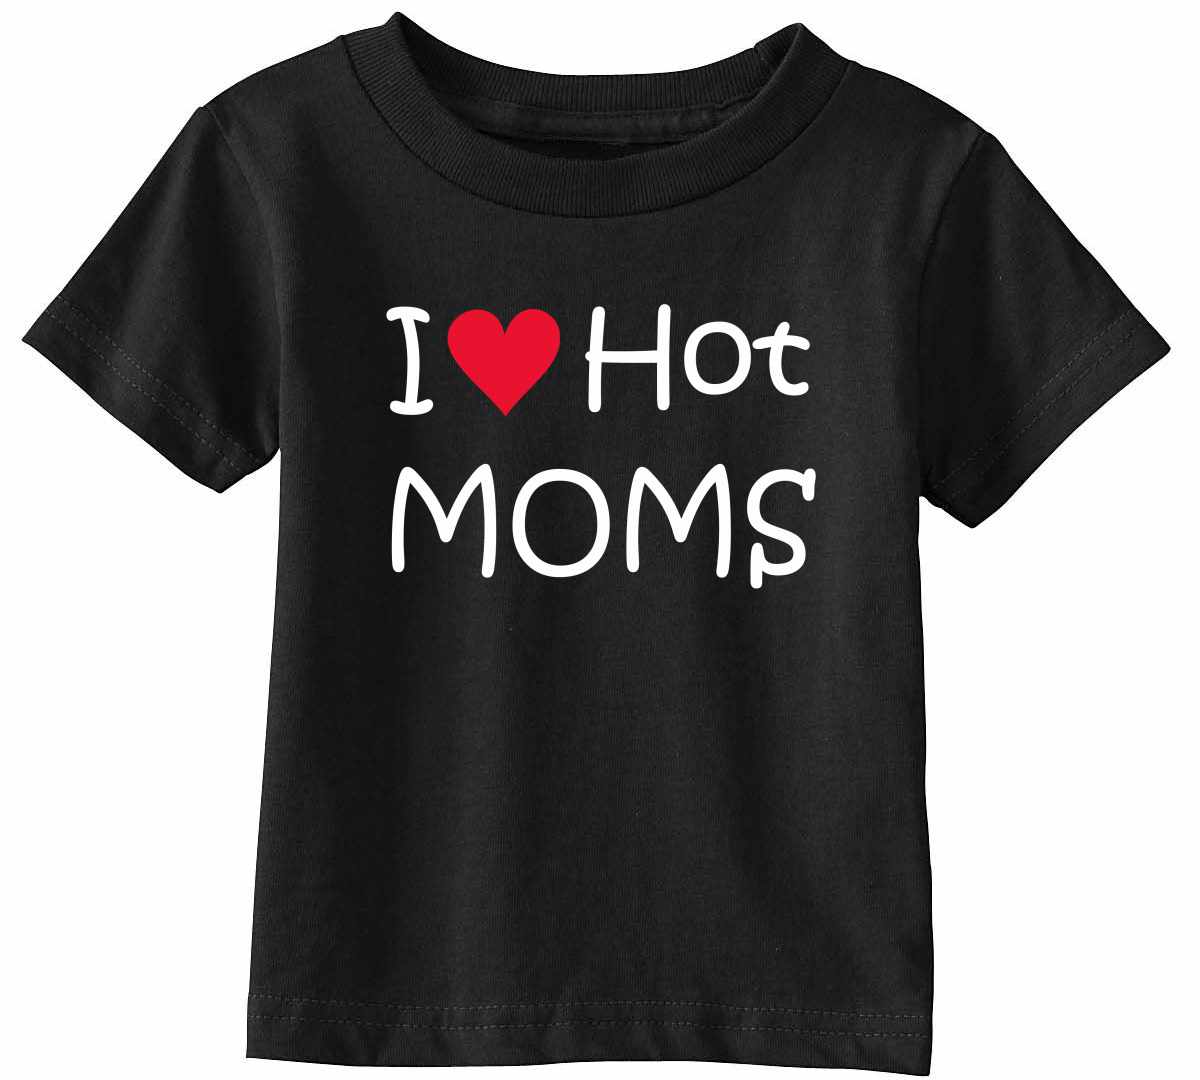 I LOVE HOT MOMS Infant/Toddler 